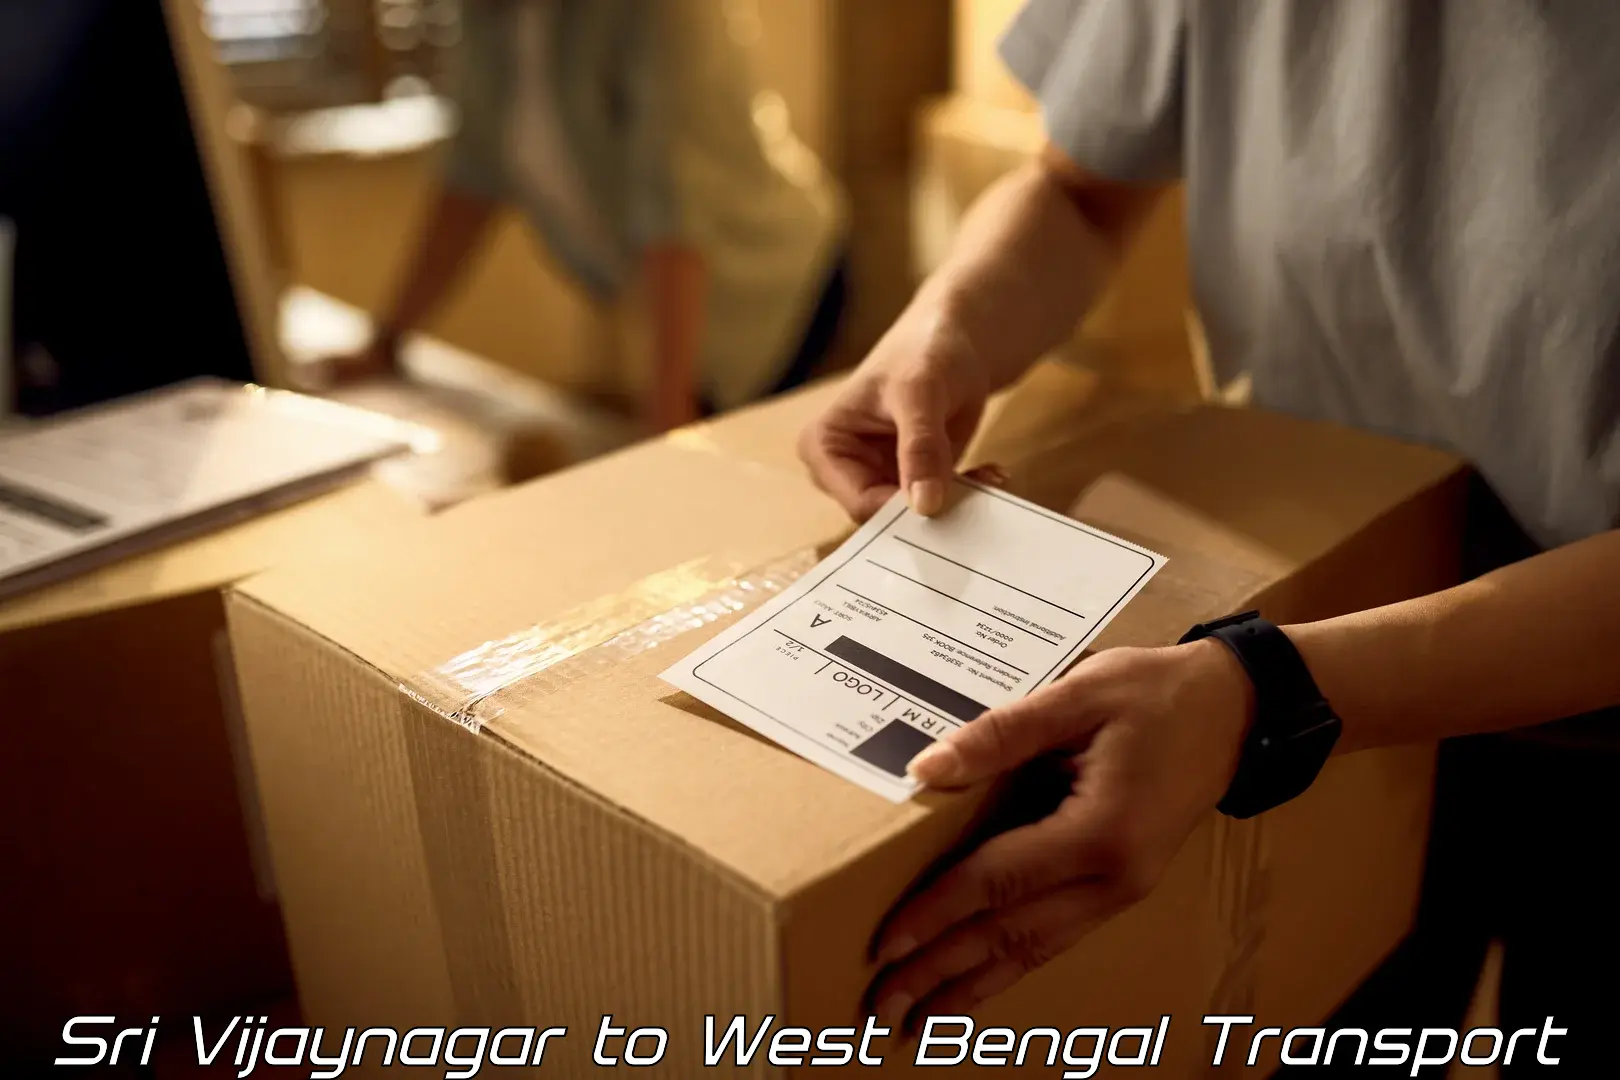 Cargo transport services Sri Vijaynagar to Dhatrigram